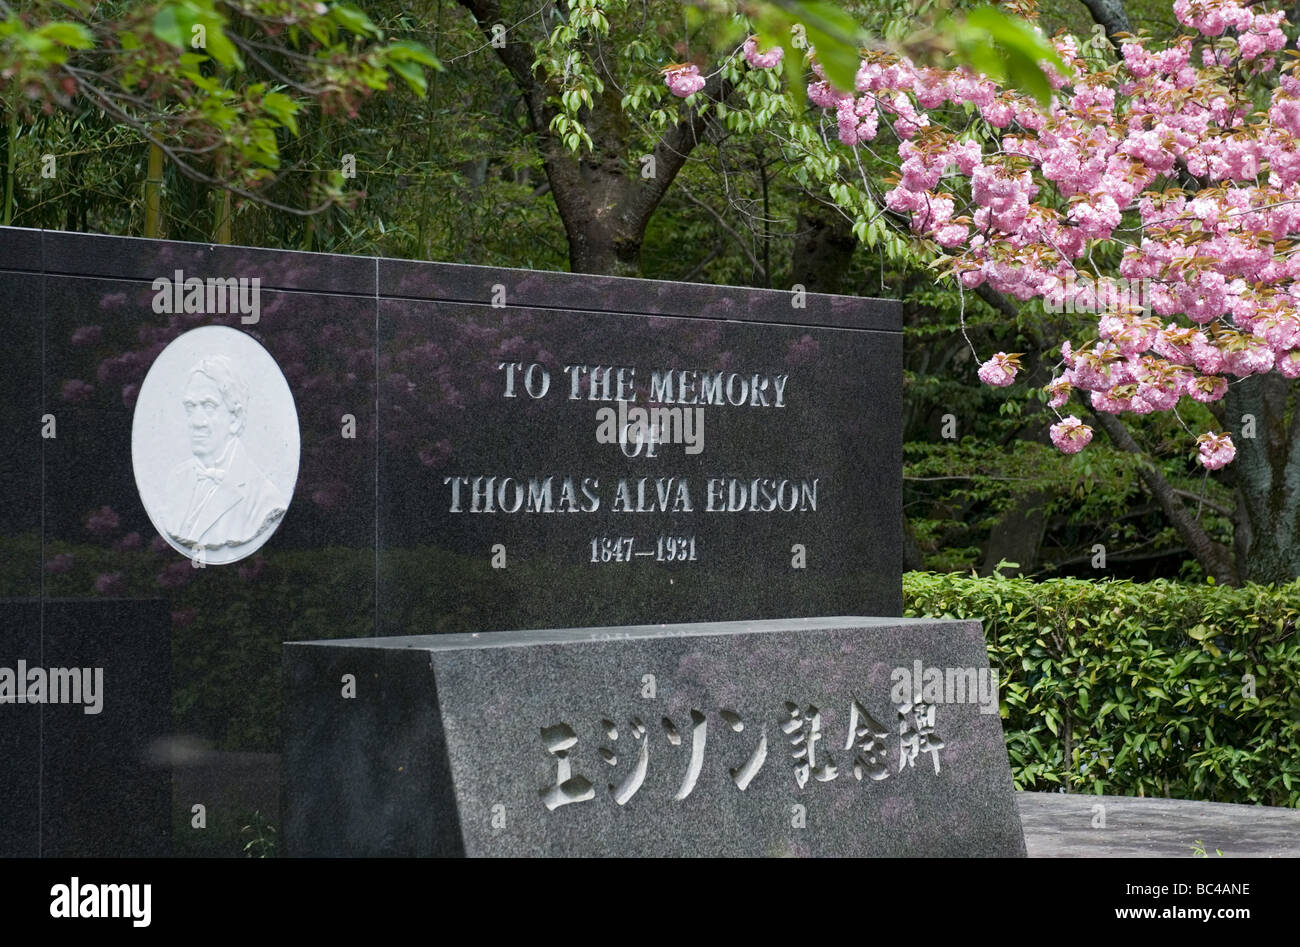 Un mémorial à l'inventeur américain Thomas Alva Edison est vu ici à l'Iwashimizu Hachimangu, près de Kyoto au Japon Banque D'Images